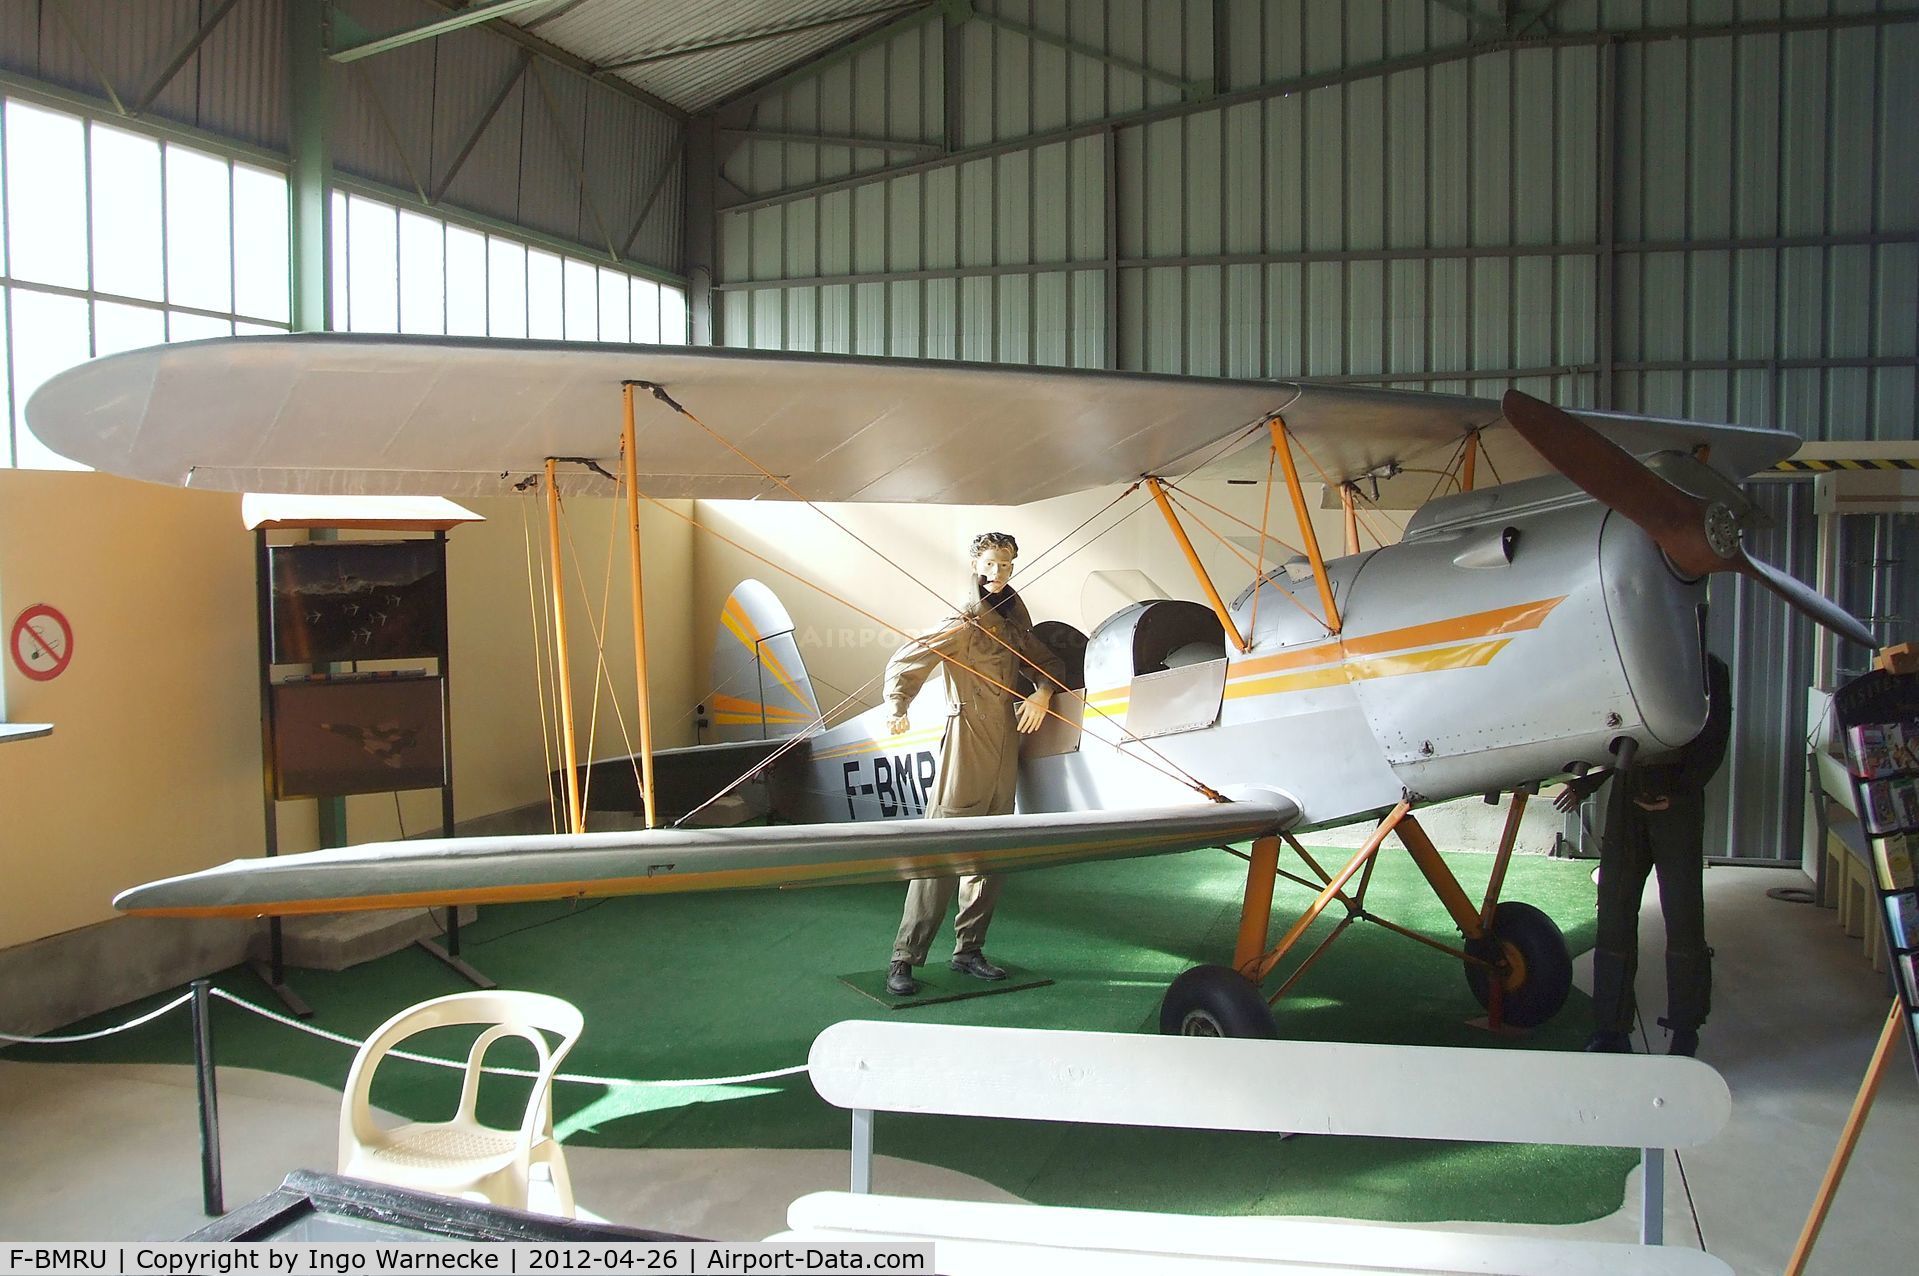 F-BMRU, Stampe-Vertongen SV-4C C/N 643, Stampe-Vertongen SV-4C at the Musée Européen de l'Aviation de Chasse, Montelimar Ancone airfield